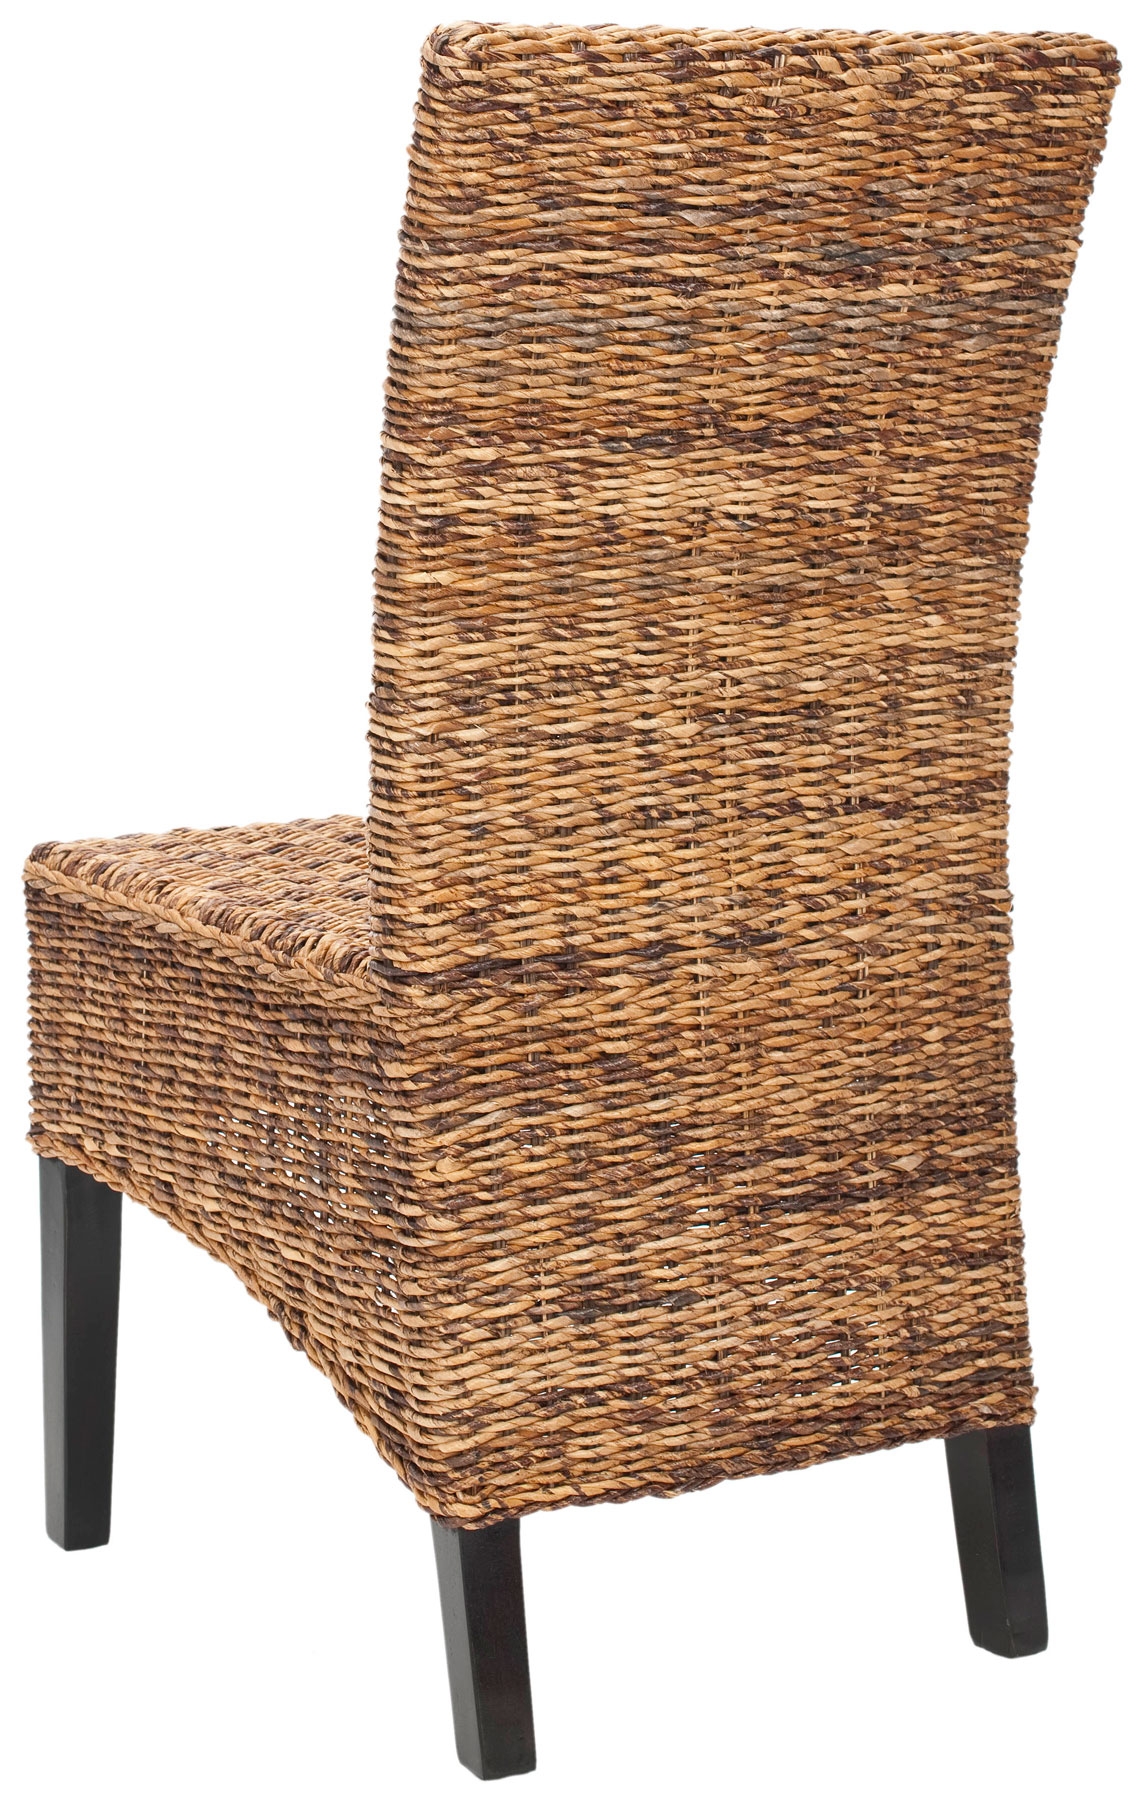 Siesta 18''H Wicker Side Chair (Set Of 2) - Dark Brown/Dark Colonial - Safavieh - Image 1